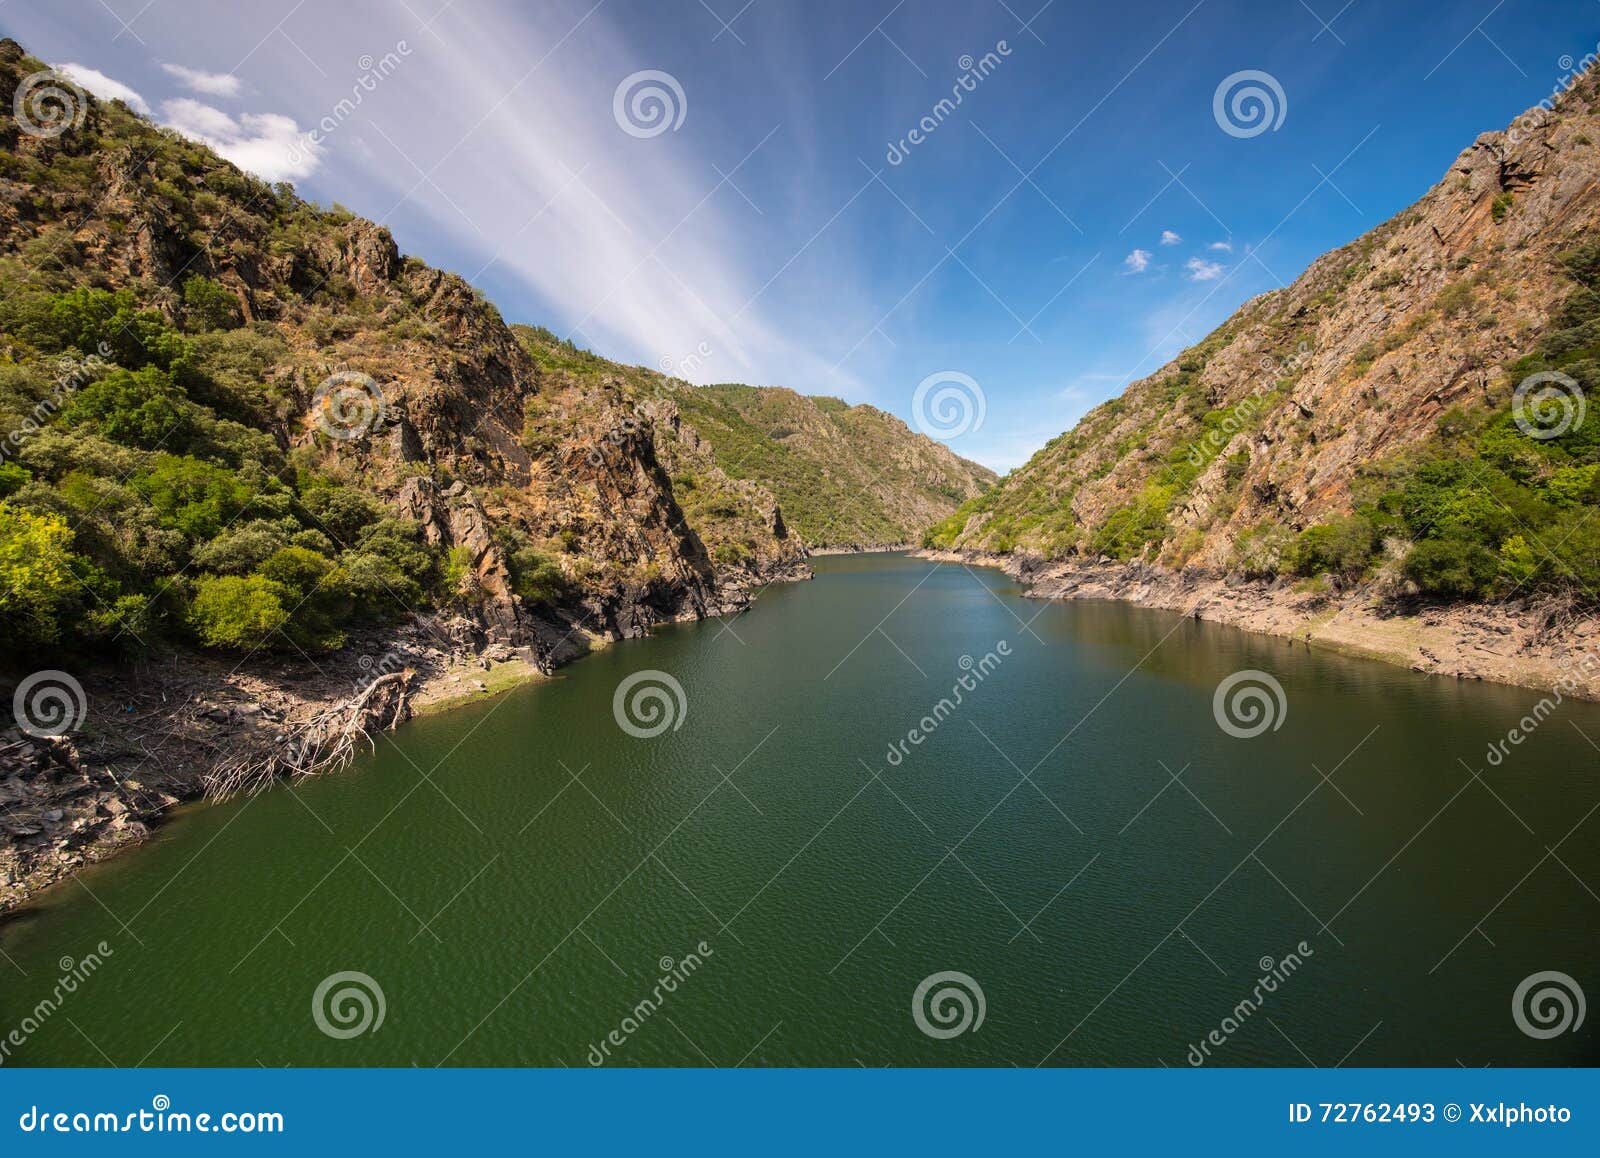 rio sil in galicia